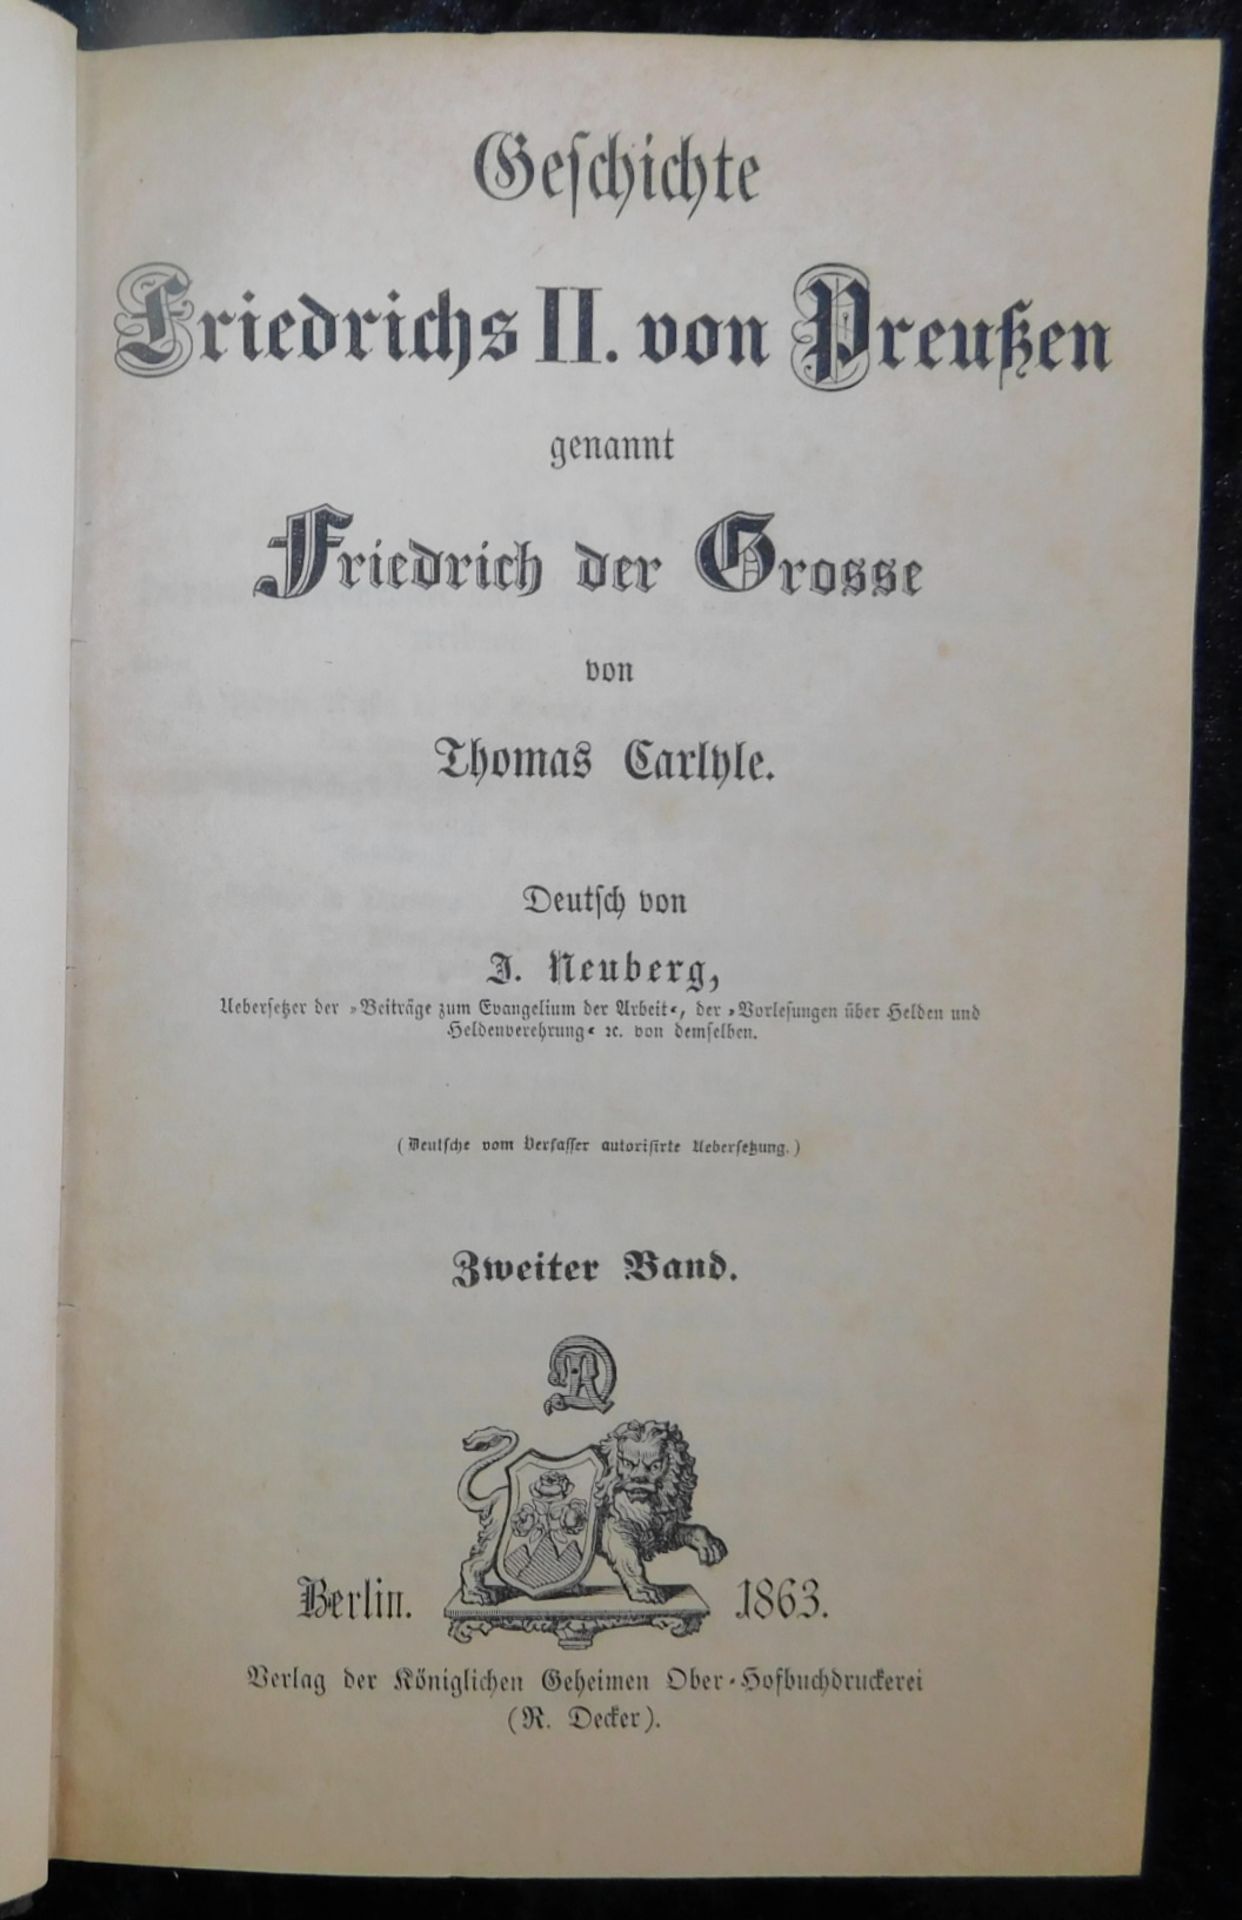 Friedrich der Große, 5 Bände, Thomas Carlyle, Verlag R. Decker, Berlin 1863 - Image 3 of 6